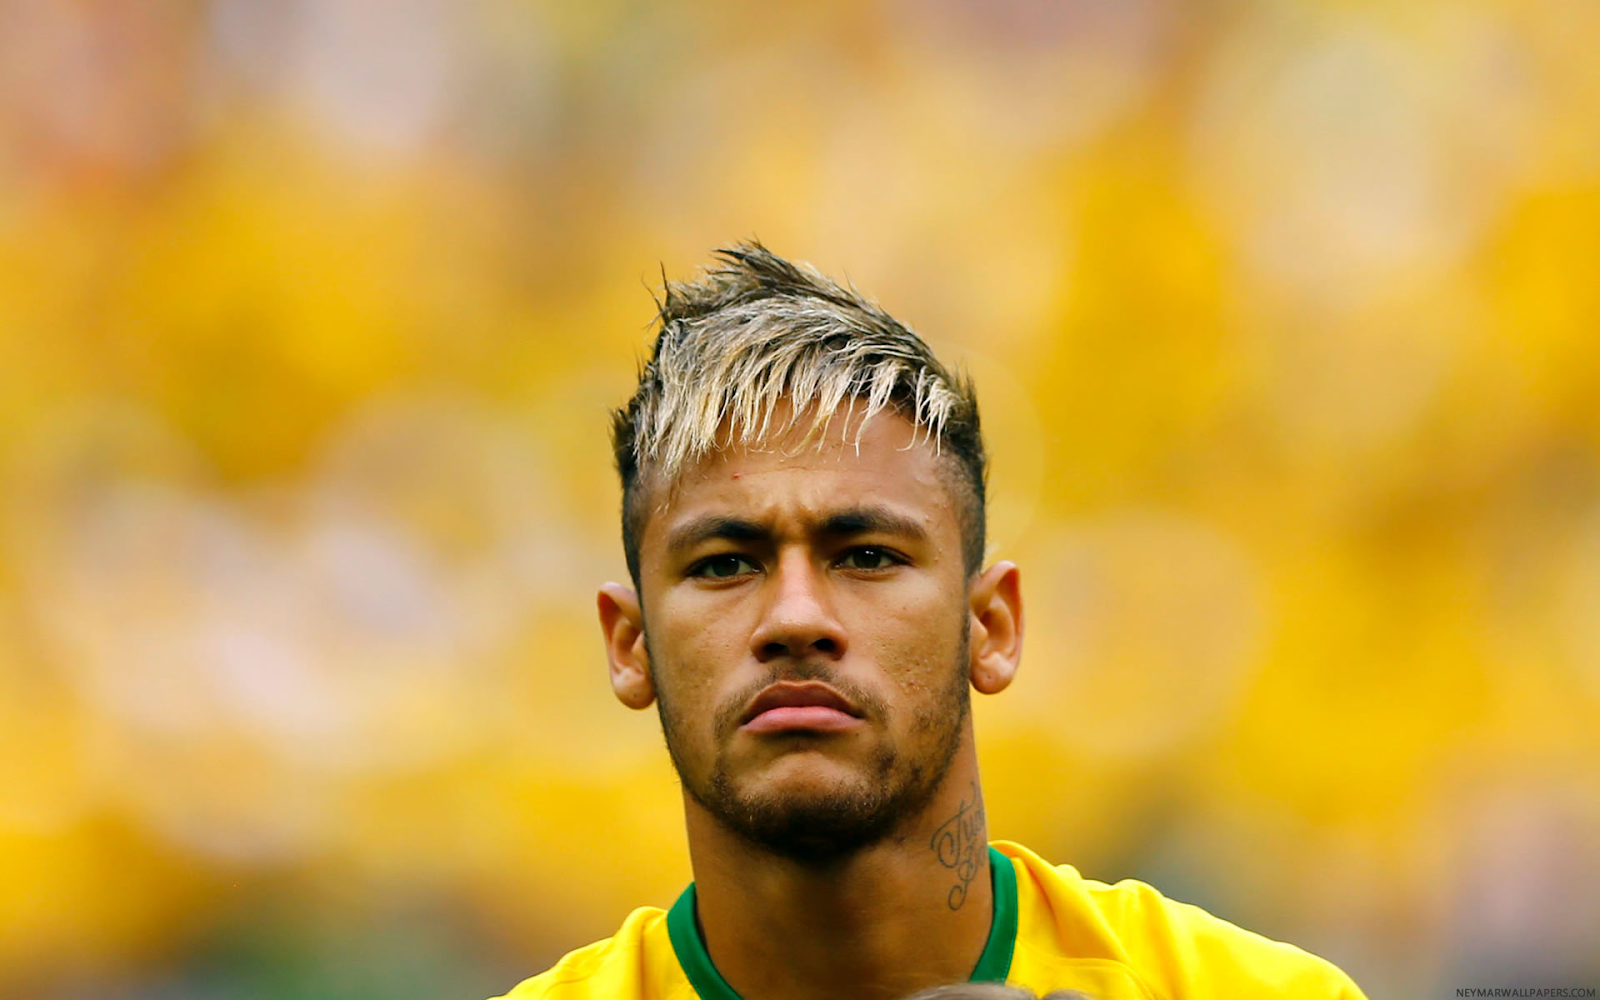 Kiểu tóc ngang đơn giản và trưởng thành của Neymar 